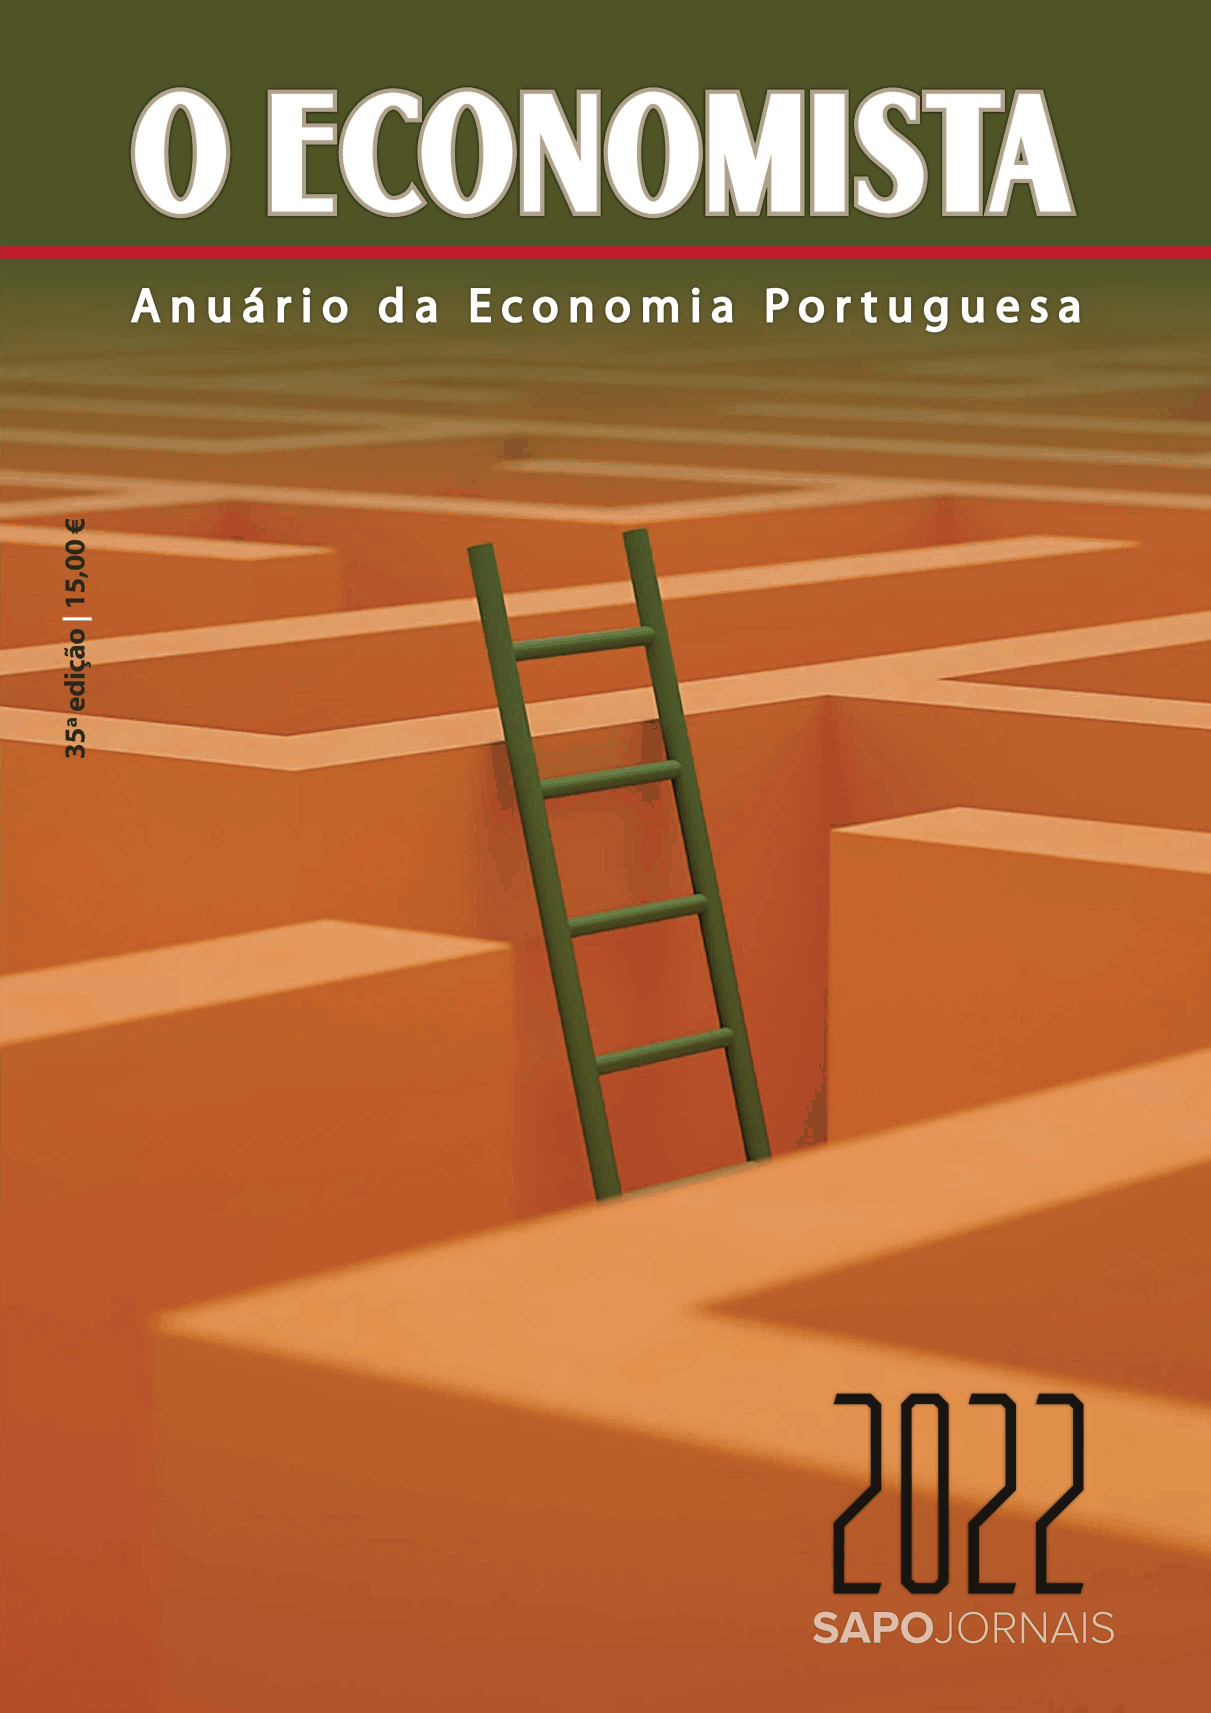 O Economista - Anuário da Economia Portuguesa